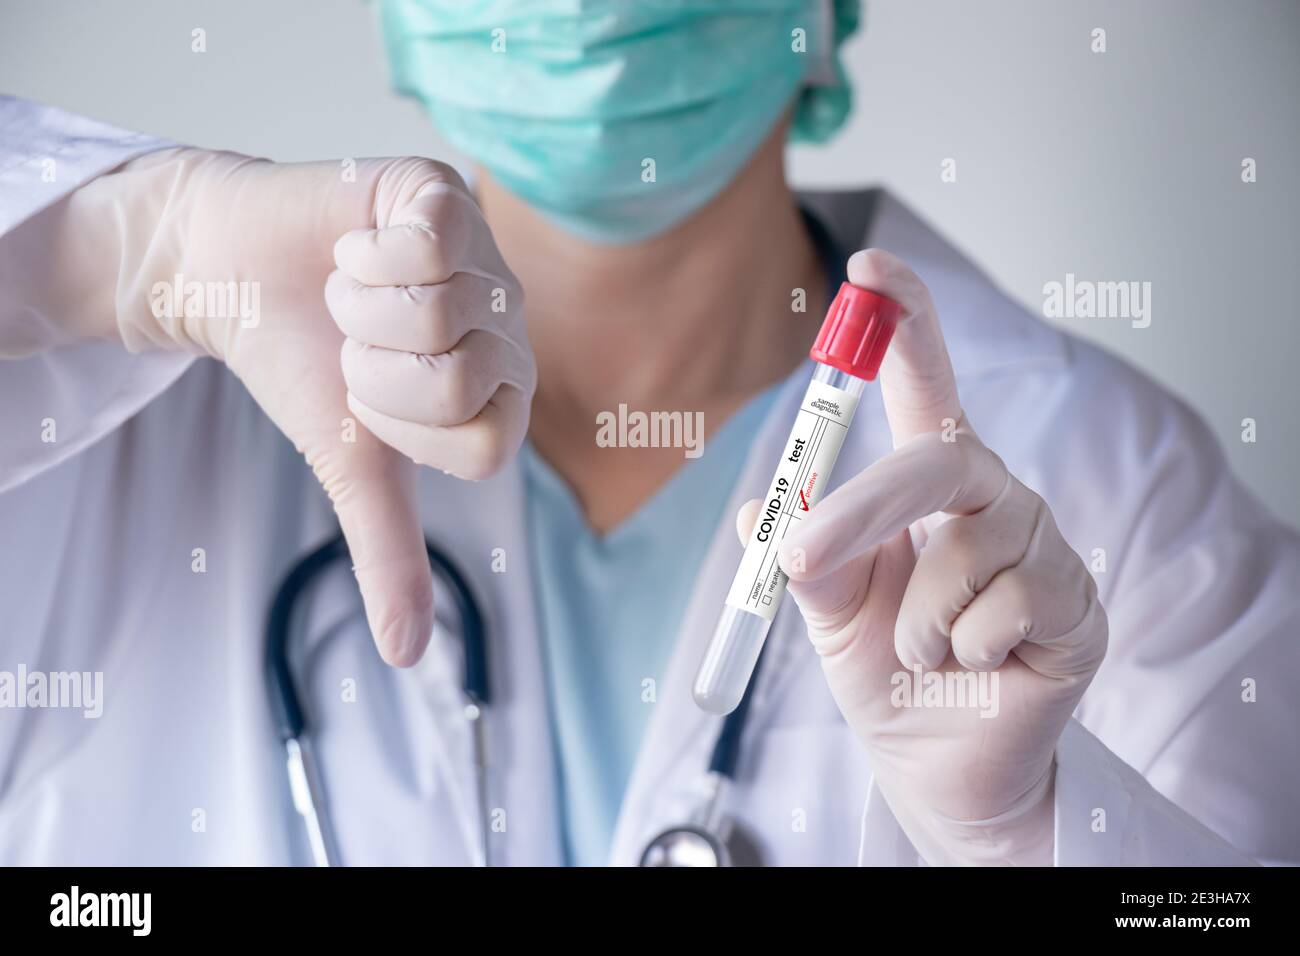 Prueba de coronavirus COVID-19. Doctor mano sosteniendo tubo de prueba de infección para la muestra de secreción nasal del paciente, etiqueta de resultado positivo y pulgar abajo gesto Foto de stock